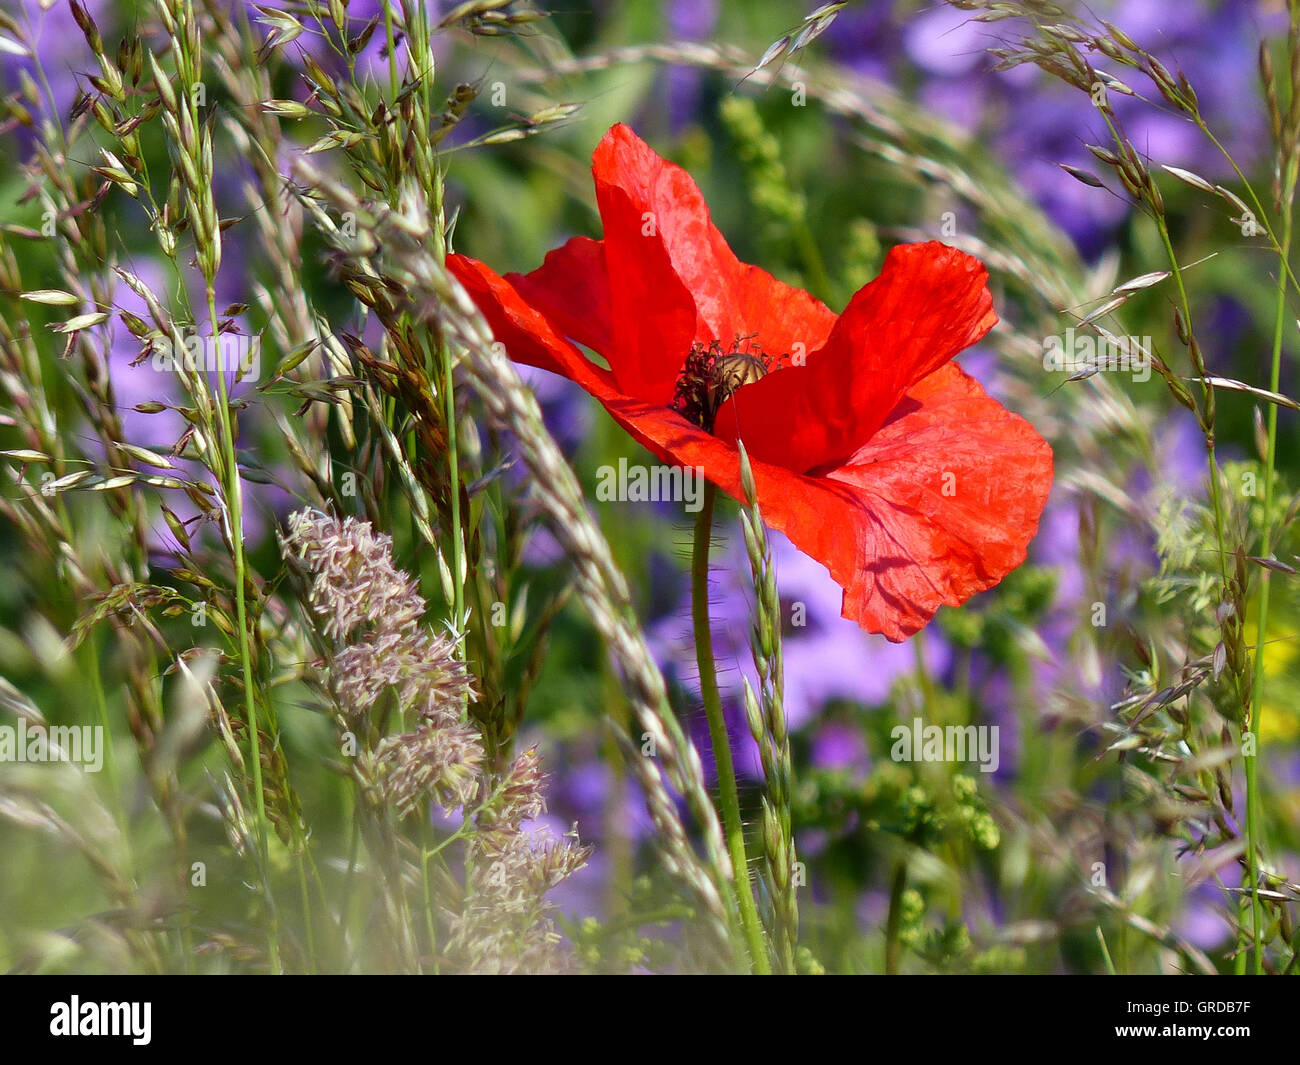 Papaveri rossi, erbe e fiori viola in background Foto Stock